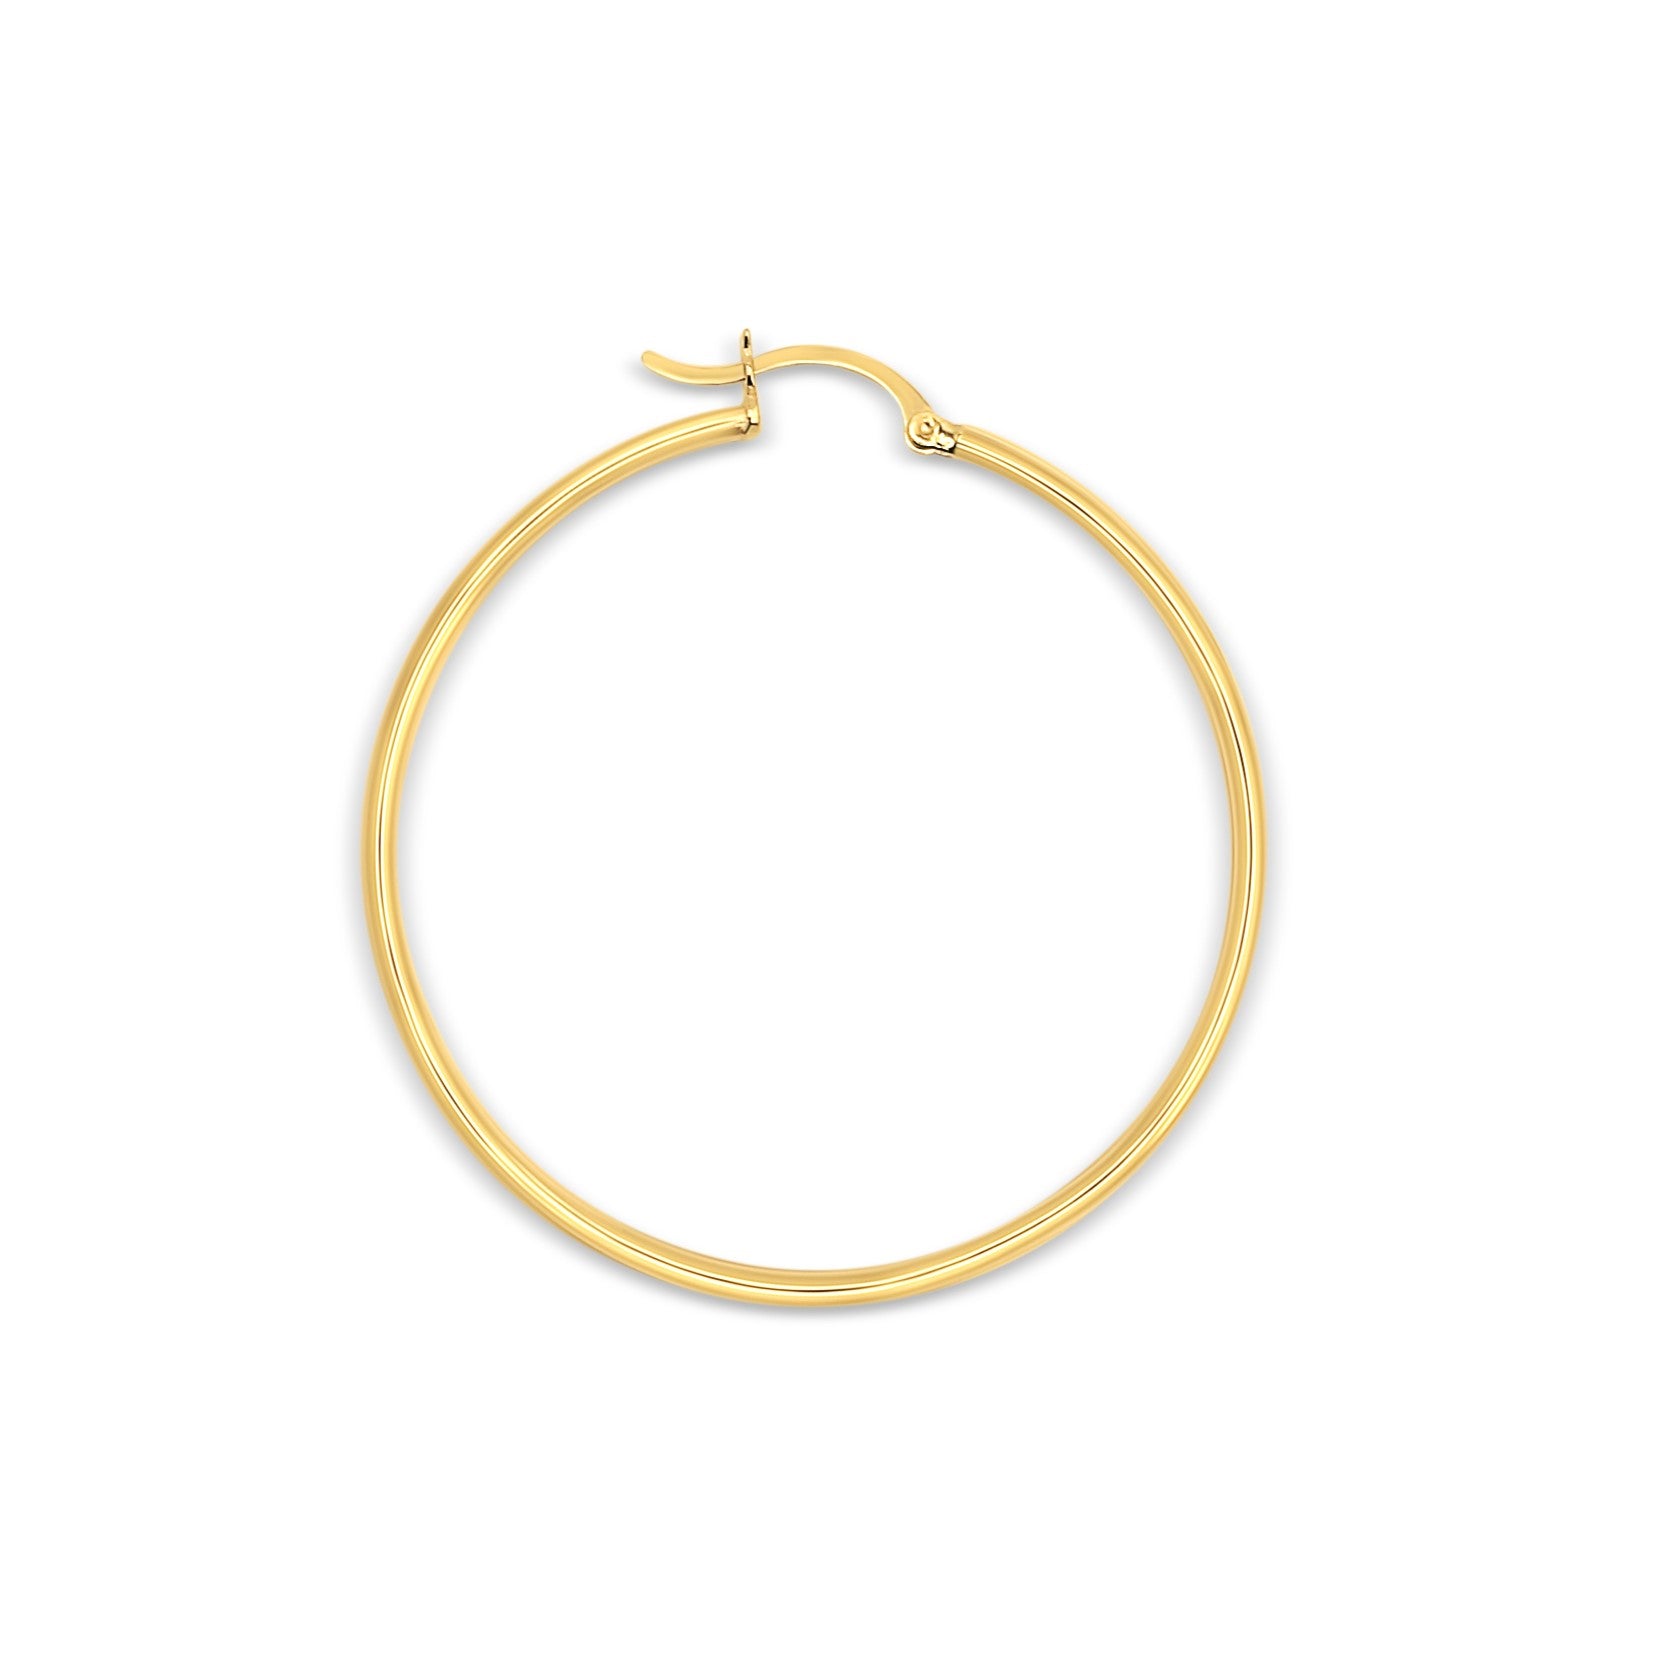 2mm Everyday Gold Tube Hoop Earrings